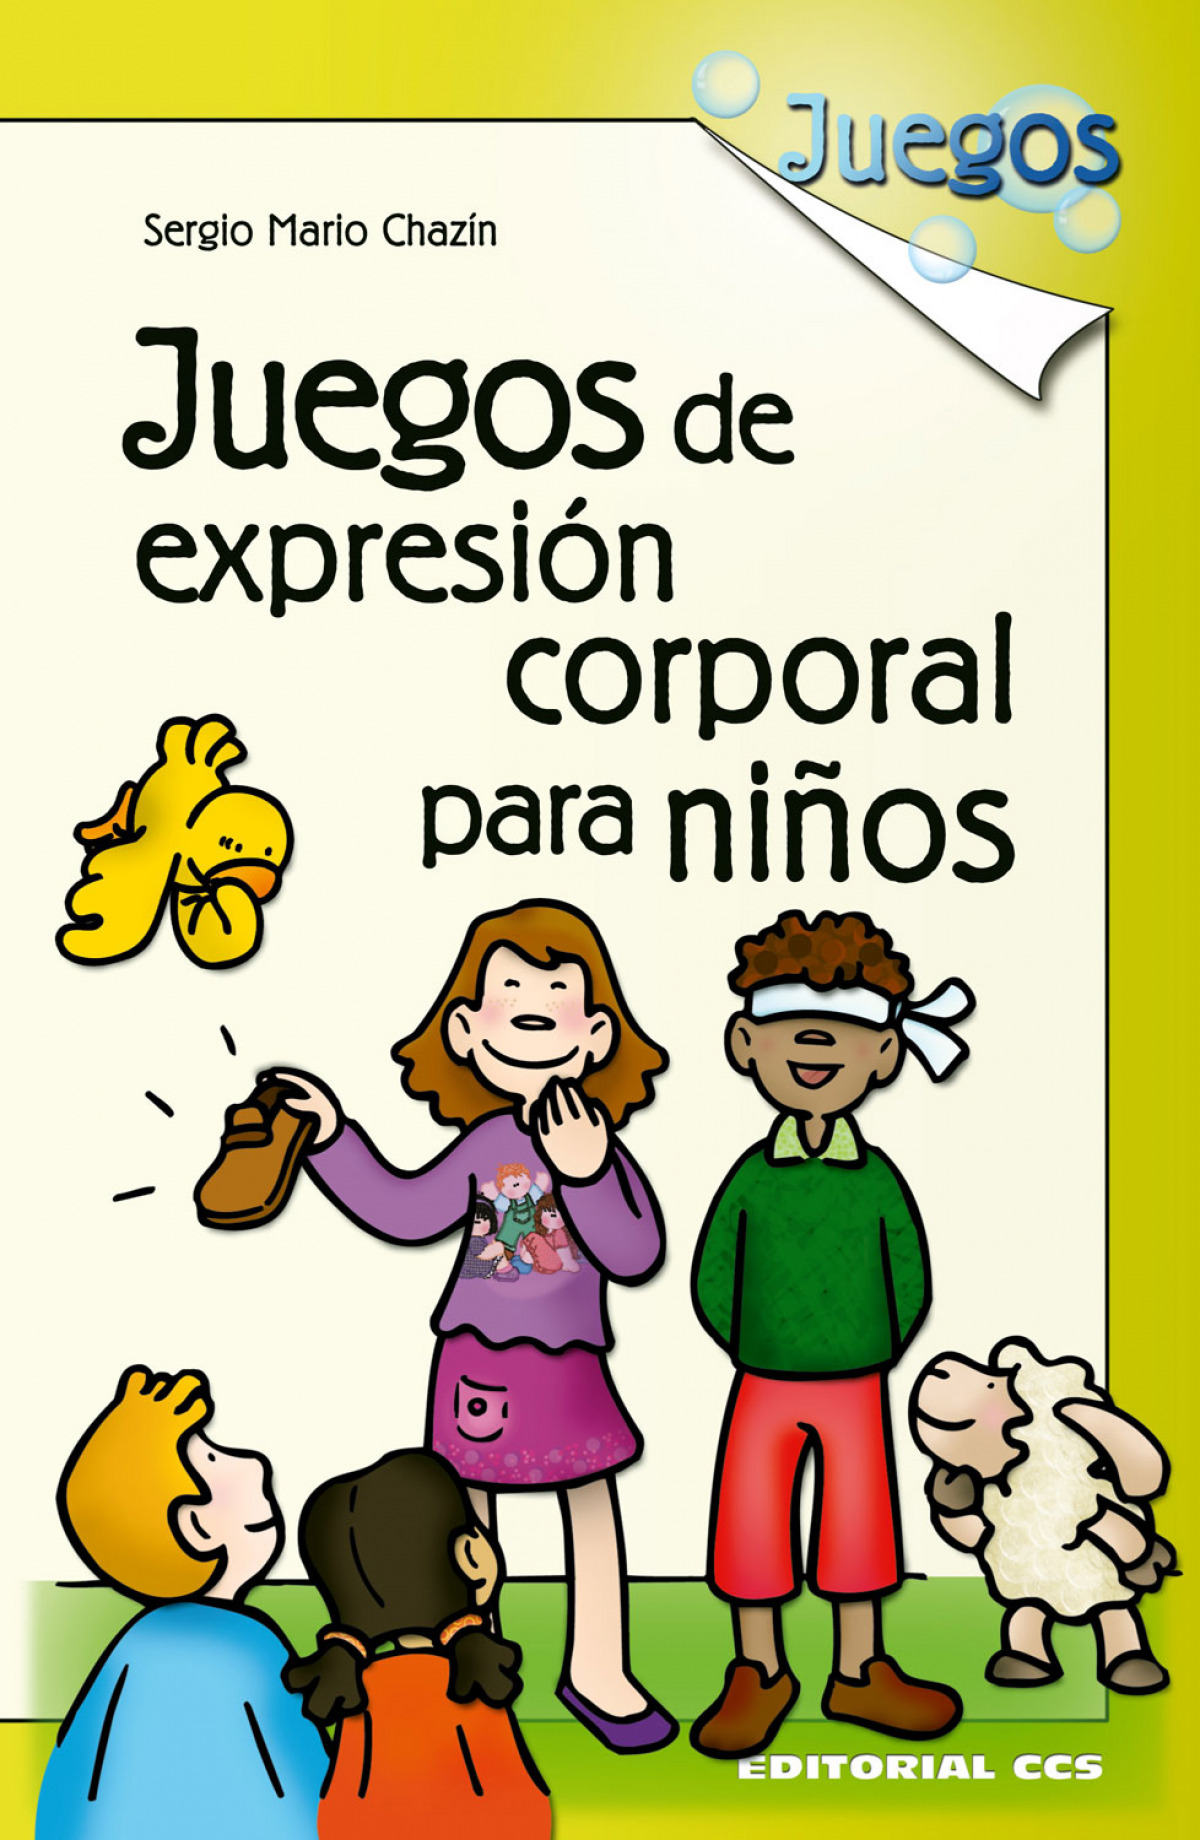 Juegos de expresion corporal para niños - Chazin, Sergio Mario